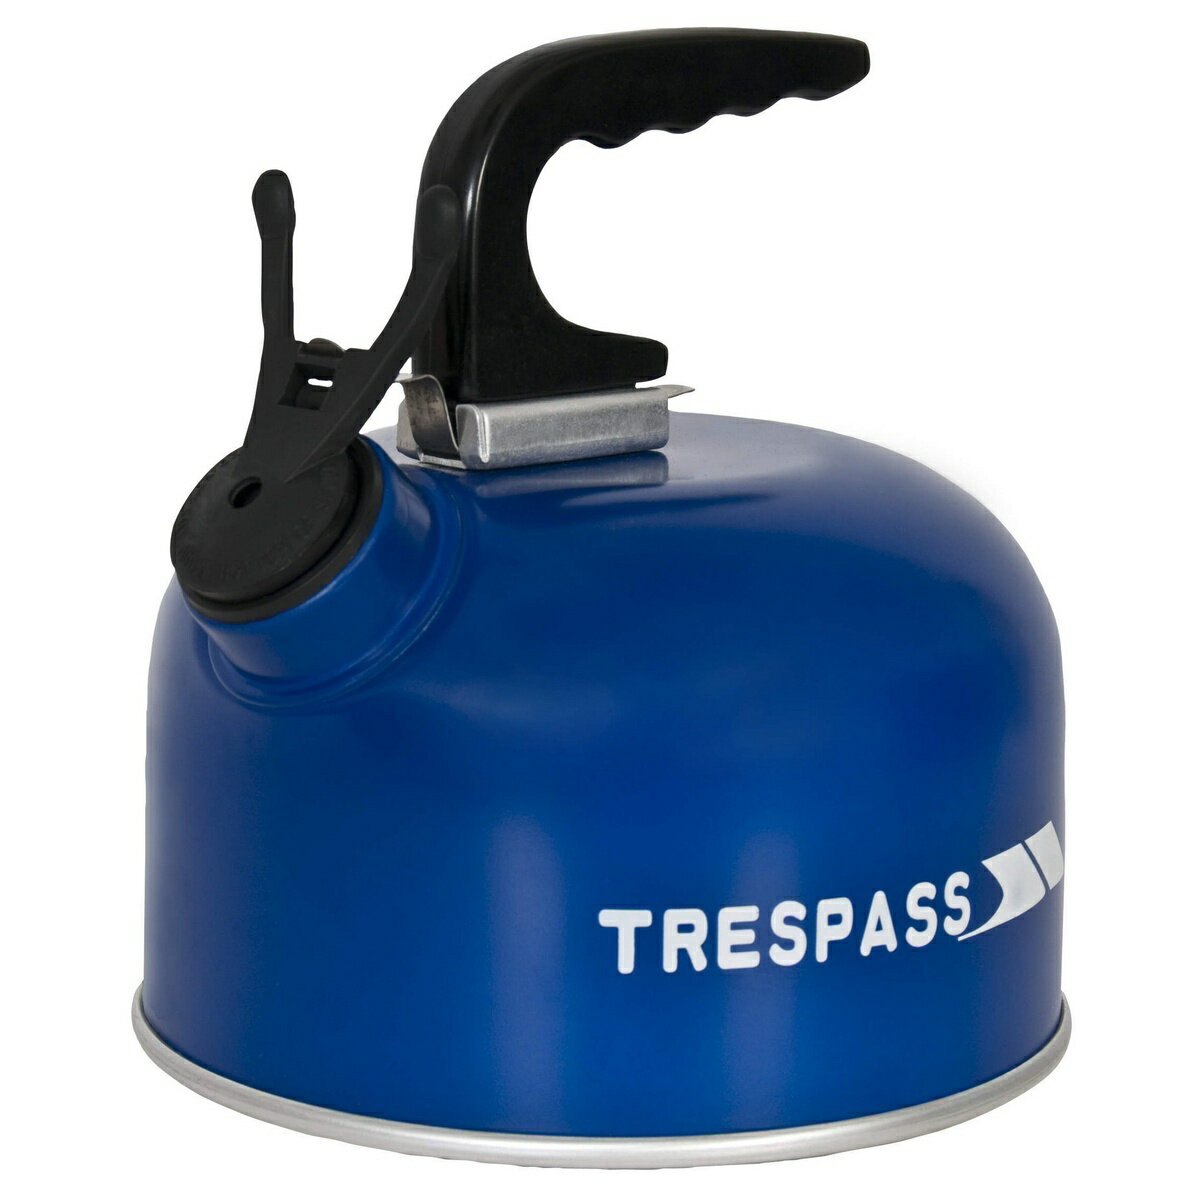 (トレスパス) Trespass Boil アルミニウム ケトル やかん キャンプ アウトドア (1リットル) 